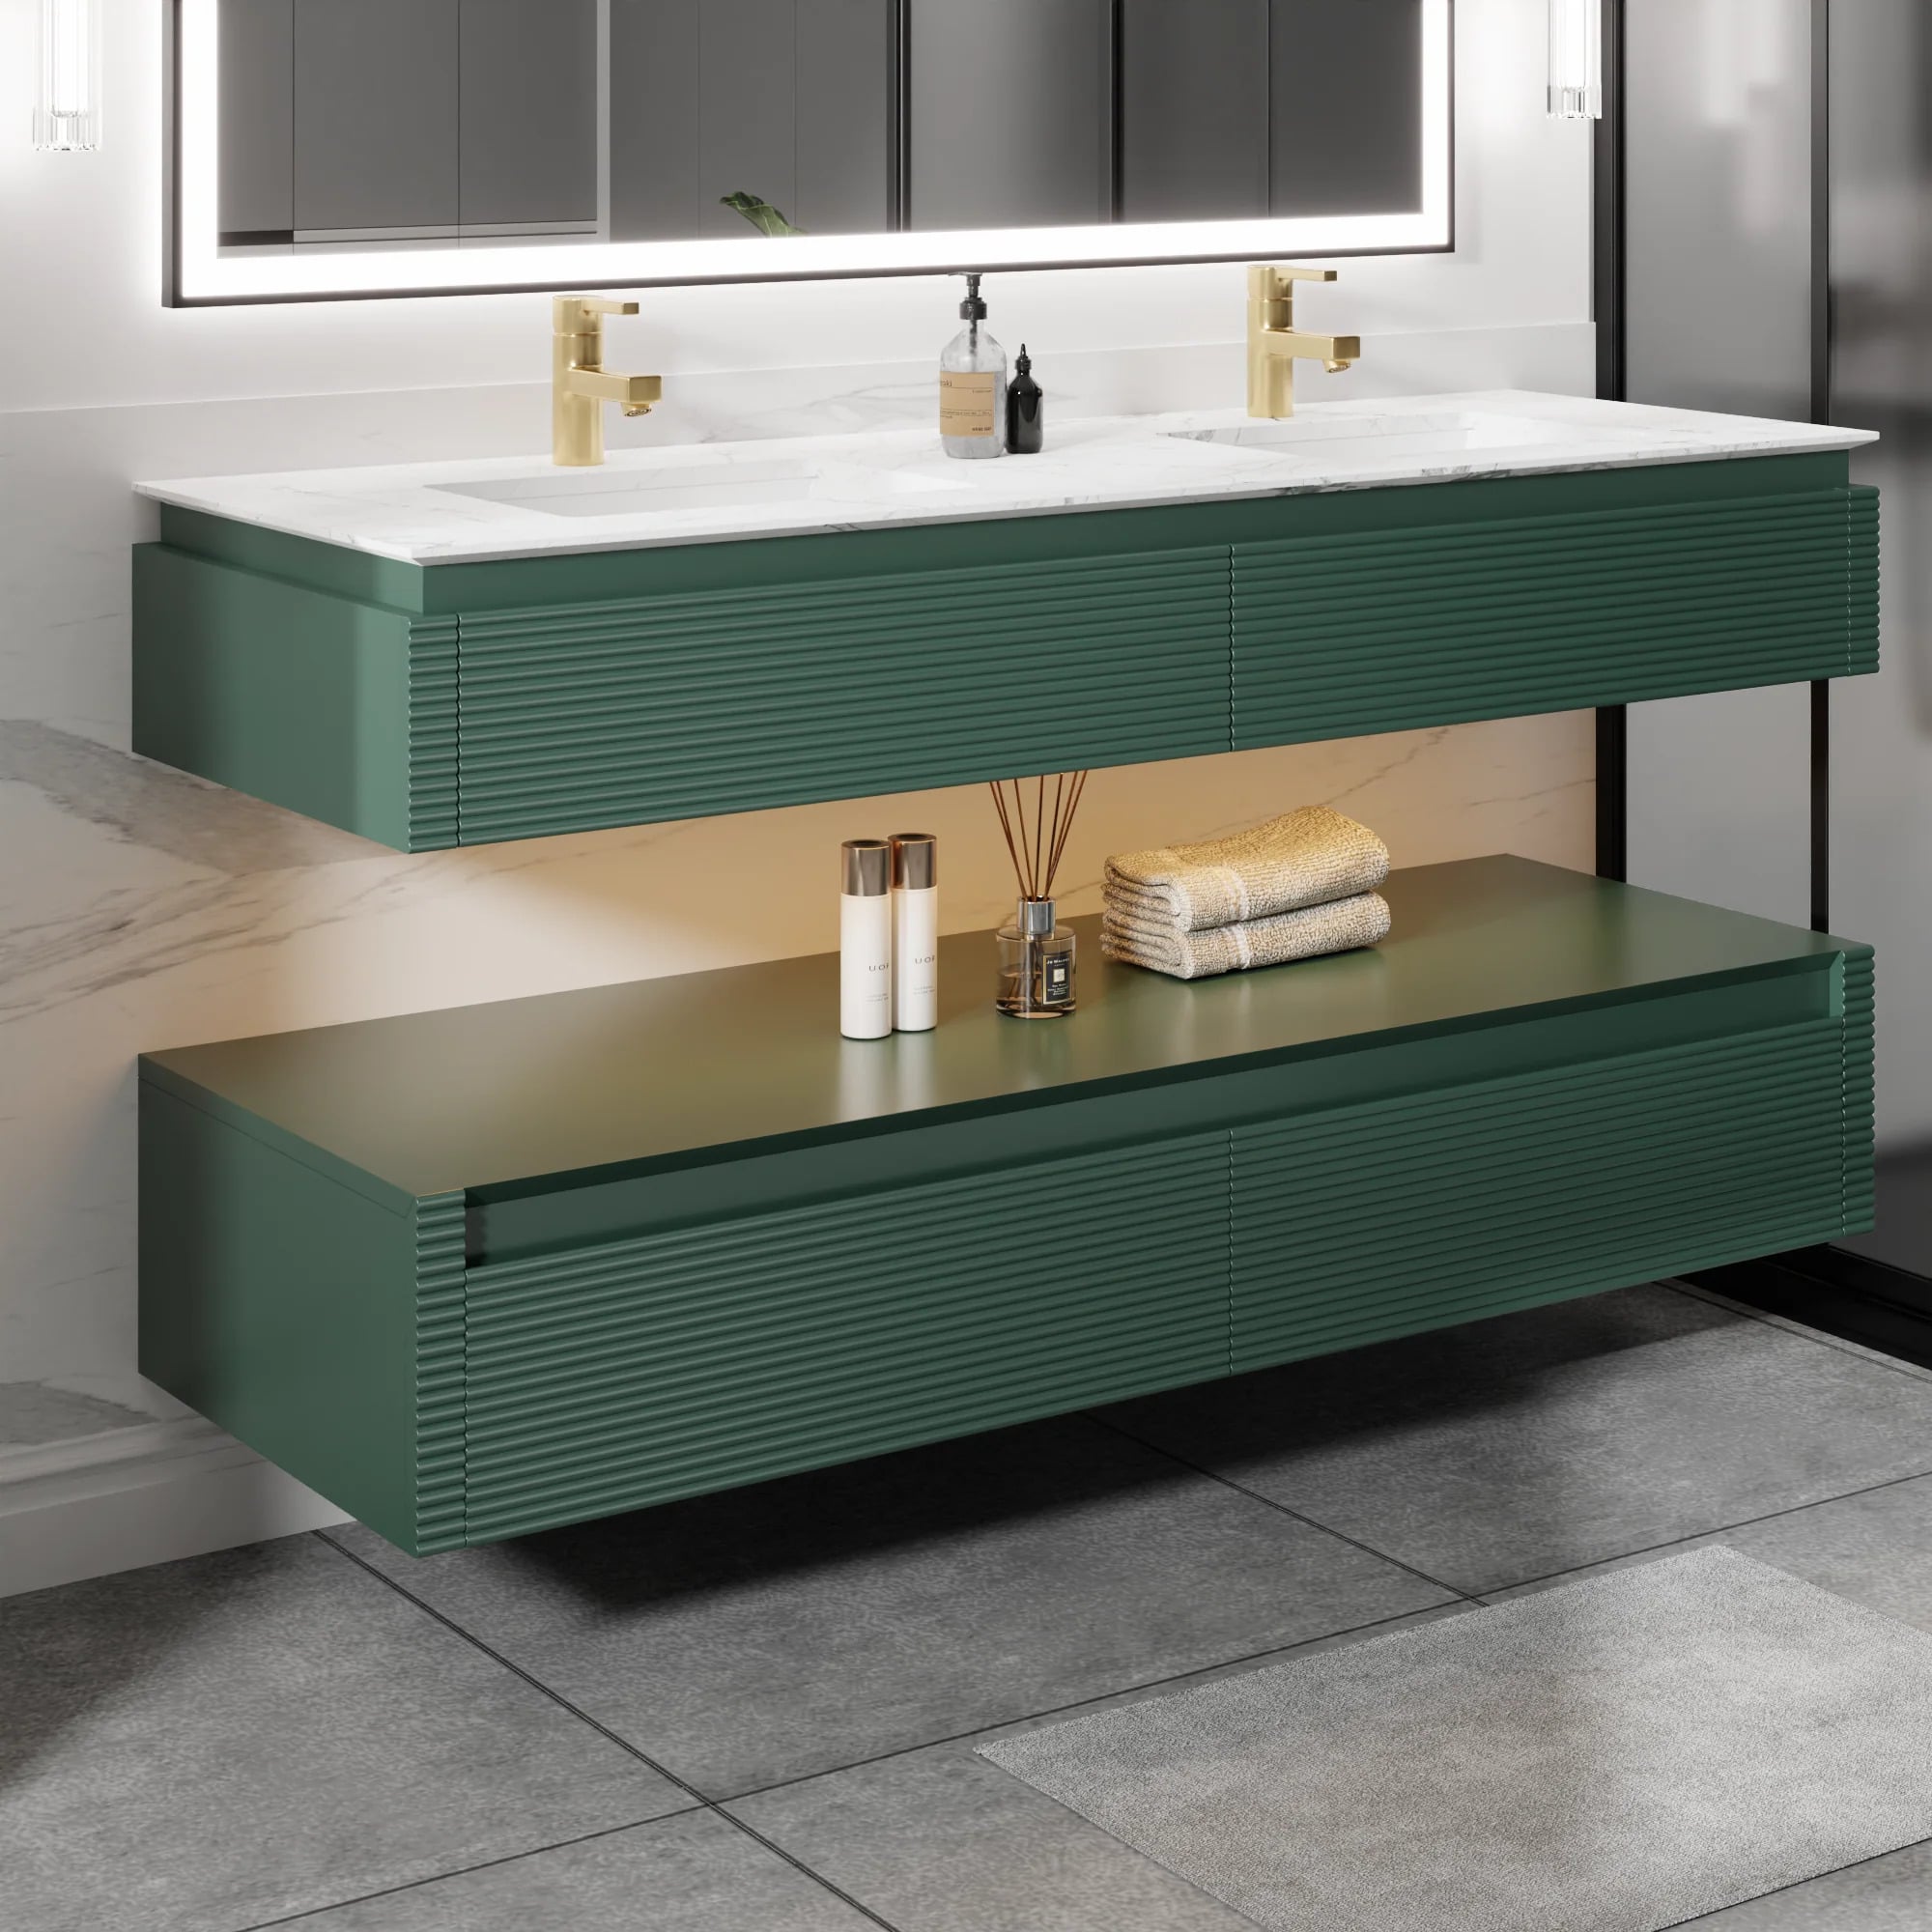 Segeo 60 inch solid wood bathroom vanity